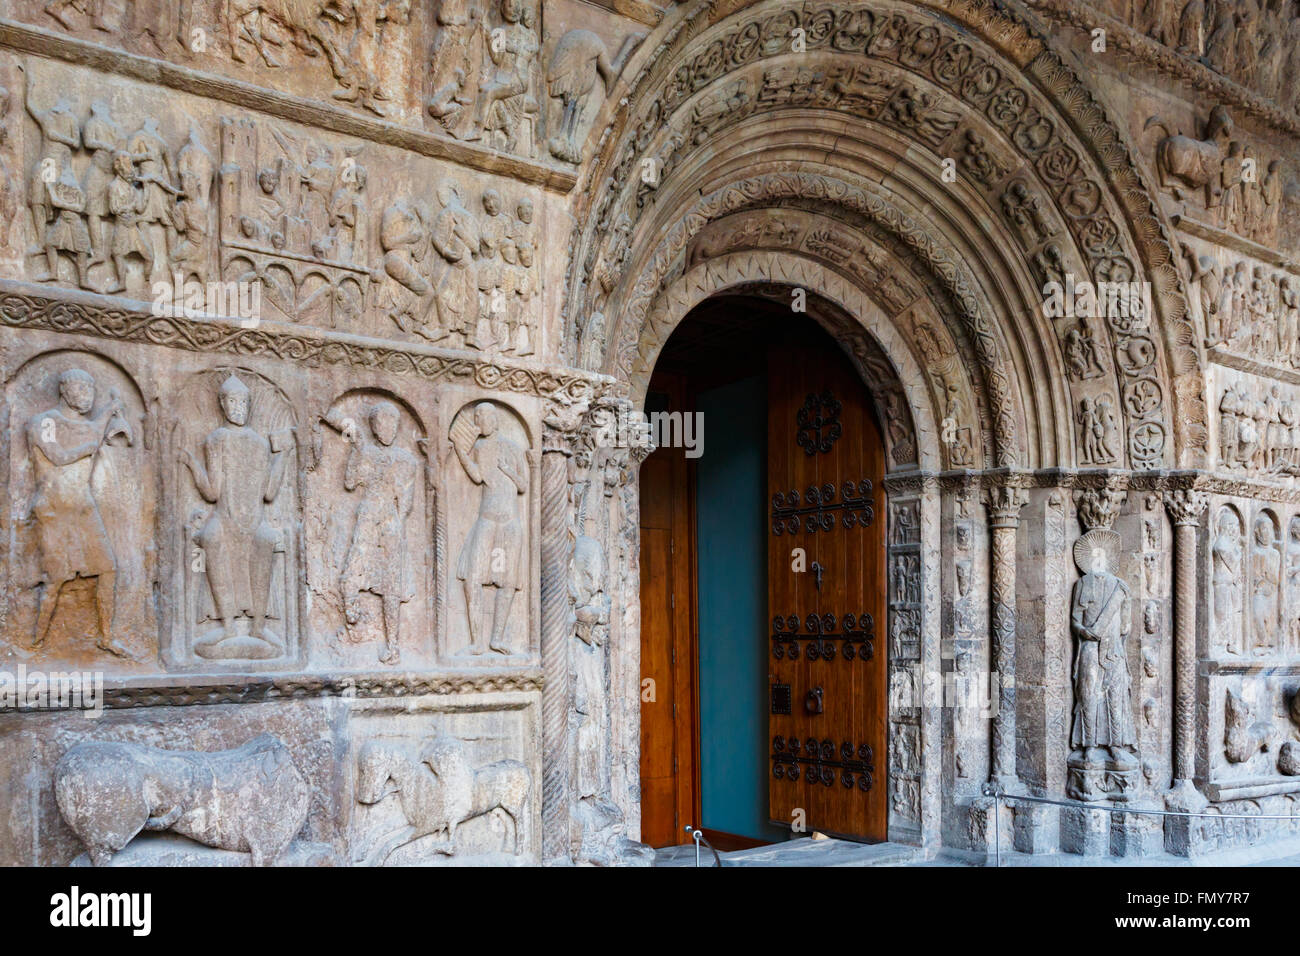 Ripoll, provincia di Girona, in Catalogna, Spagna. Monastir, o Convento de Santa Maria. Il portale romanico. La bibbia in pietra. Foto Stock